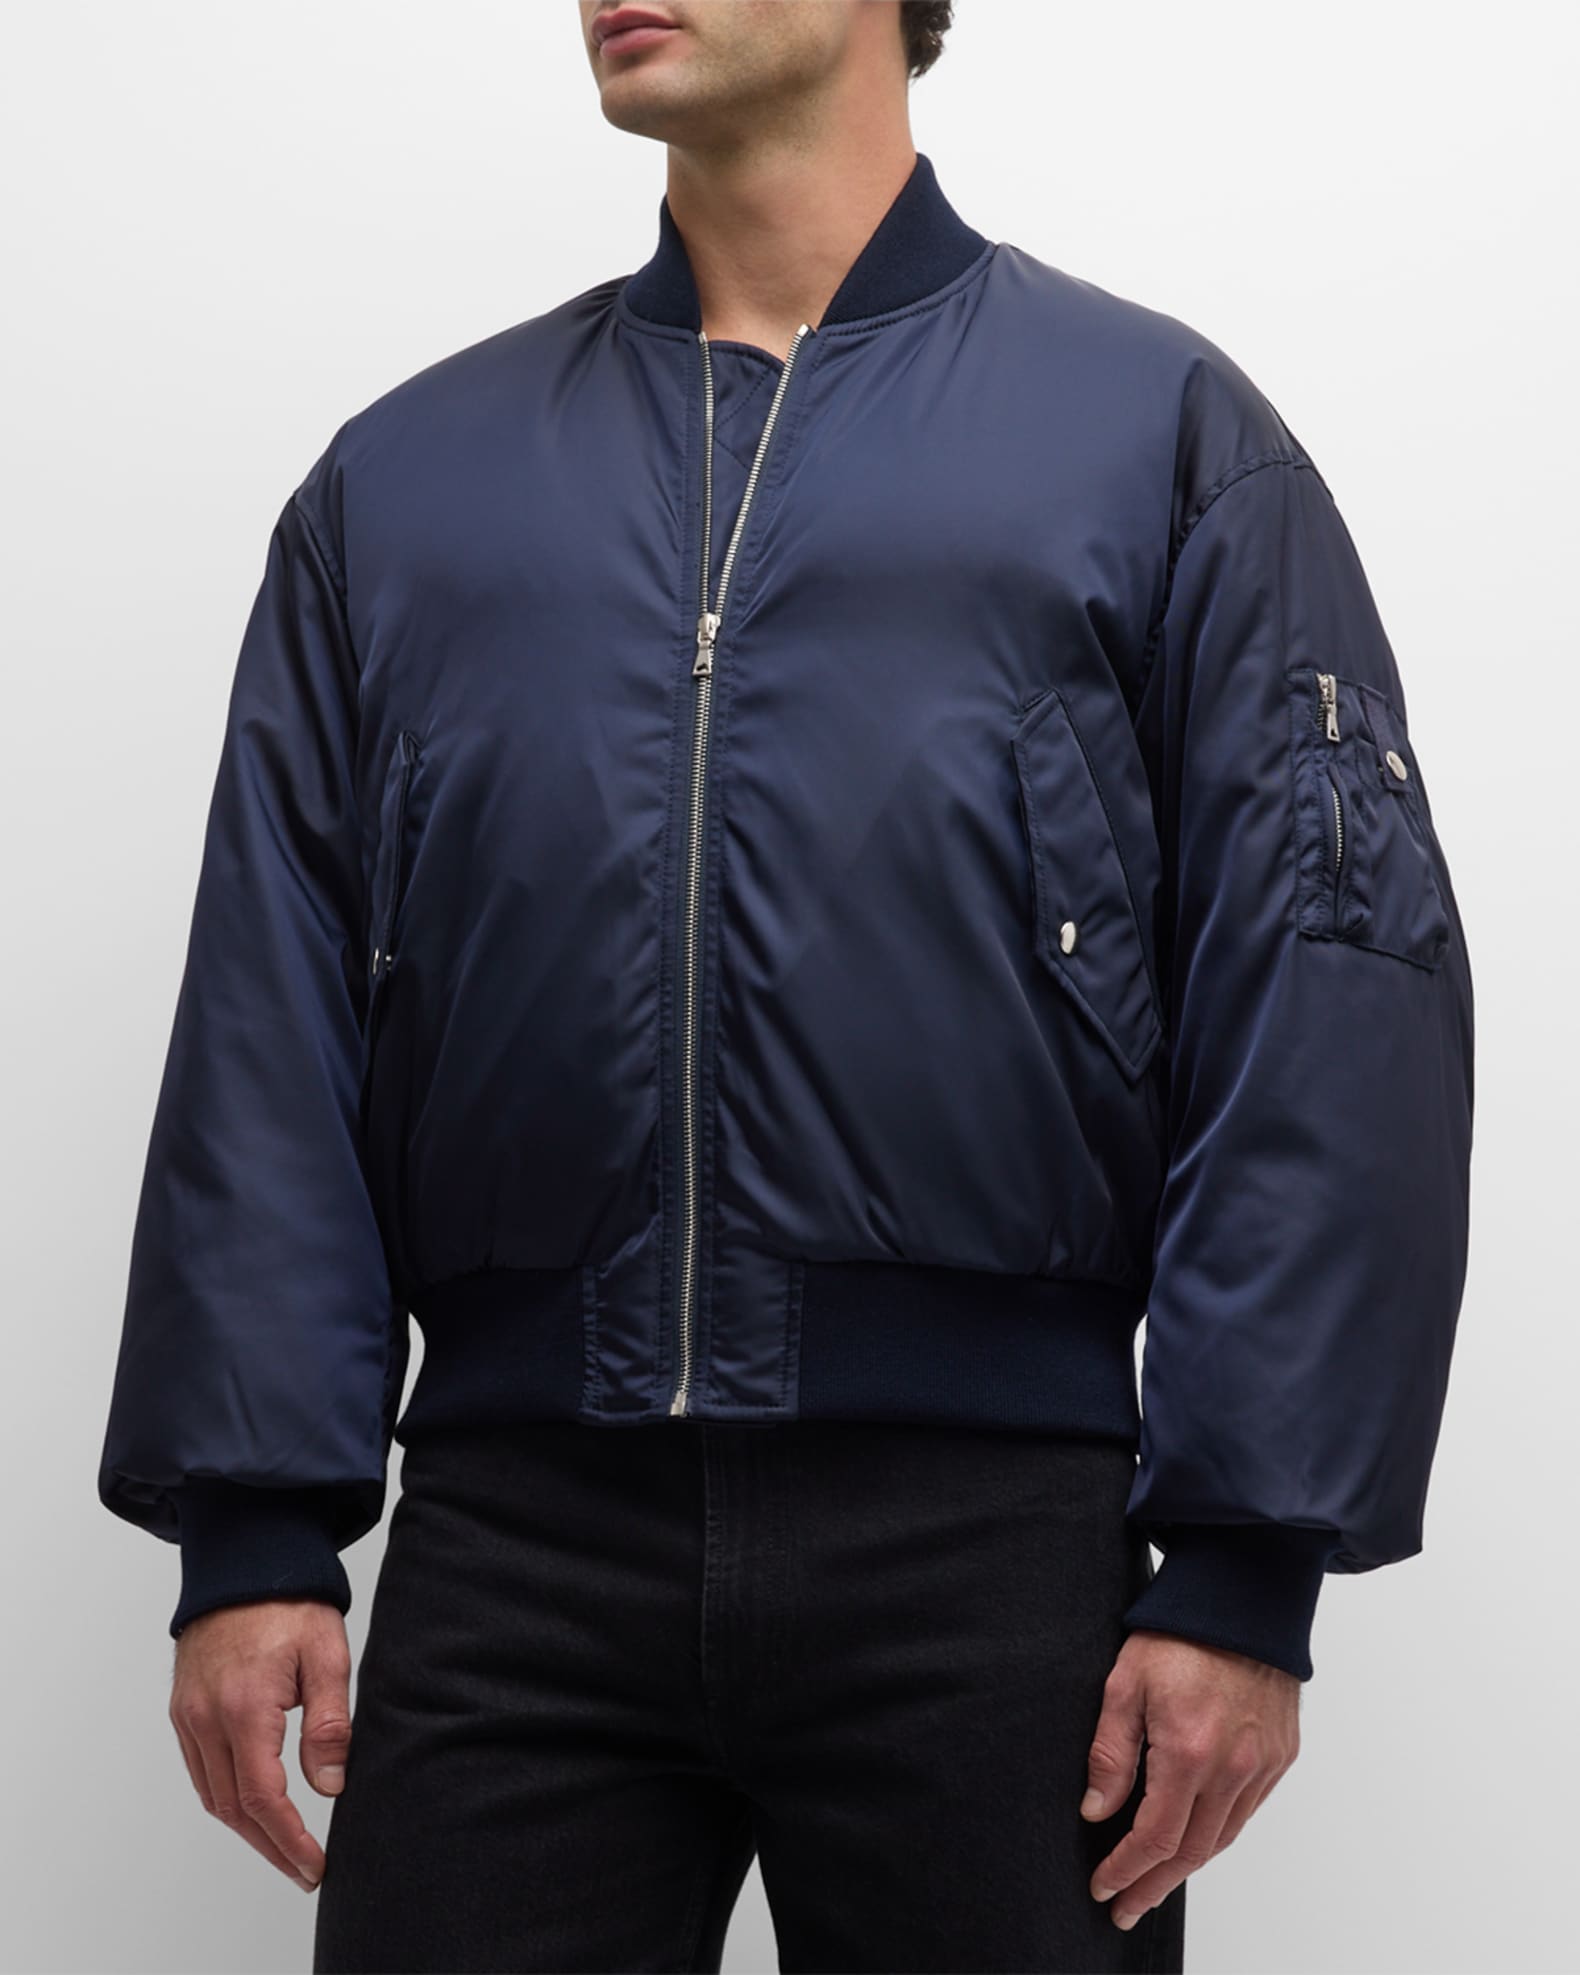 Men's Leisure Jacket Lightweight Flap Pocket Windbreaker Zipper Lapel Bomber  Jacket Nylon Biker Jacket Winter Outerwear at  Men's Clothing store